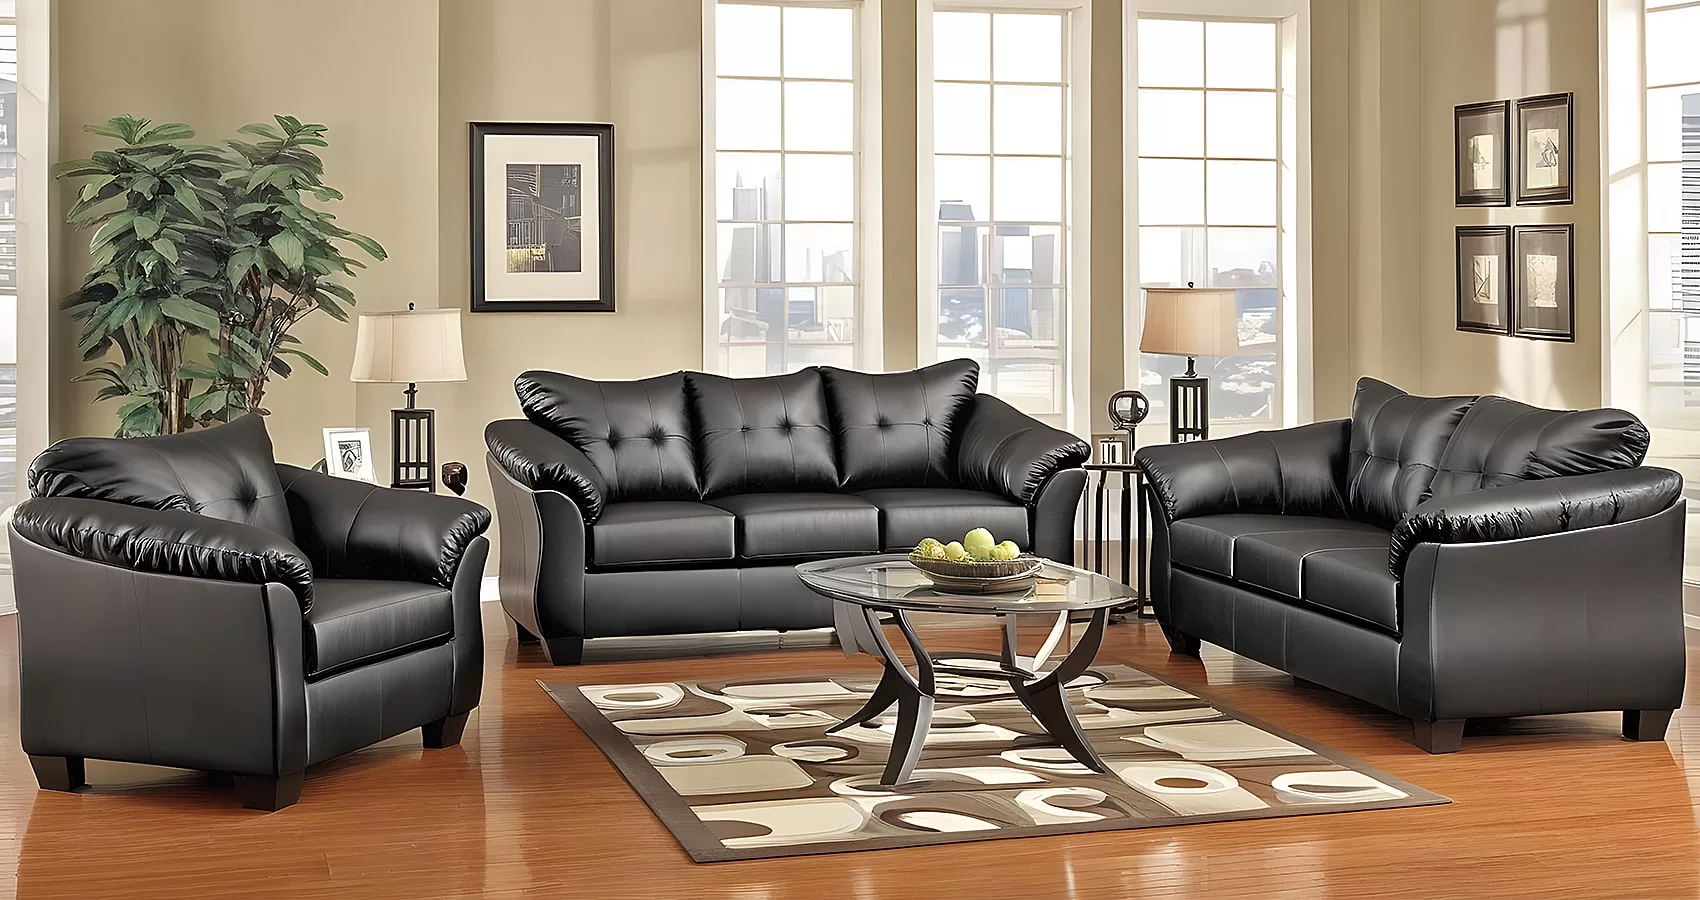 Black Couch | Black Couch Set | Black Sofa | Black Sofa Set